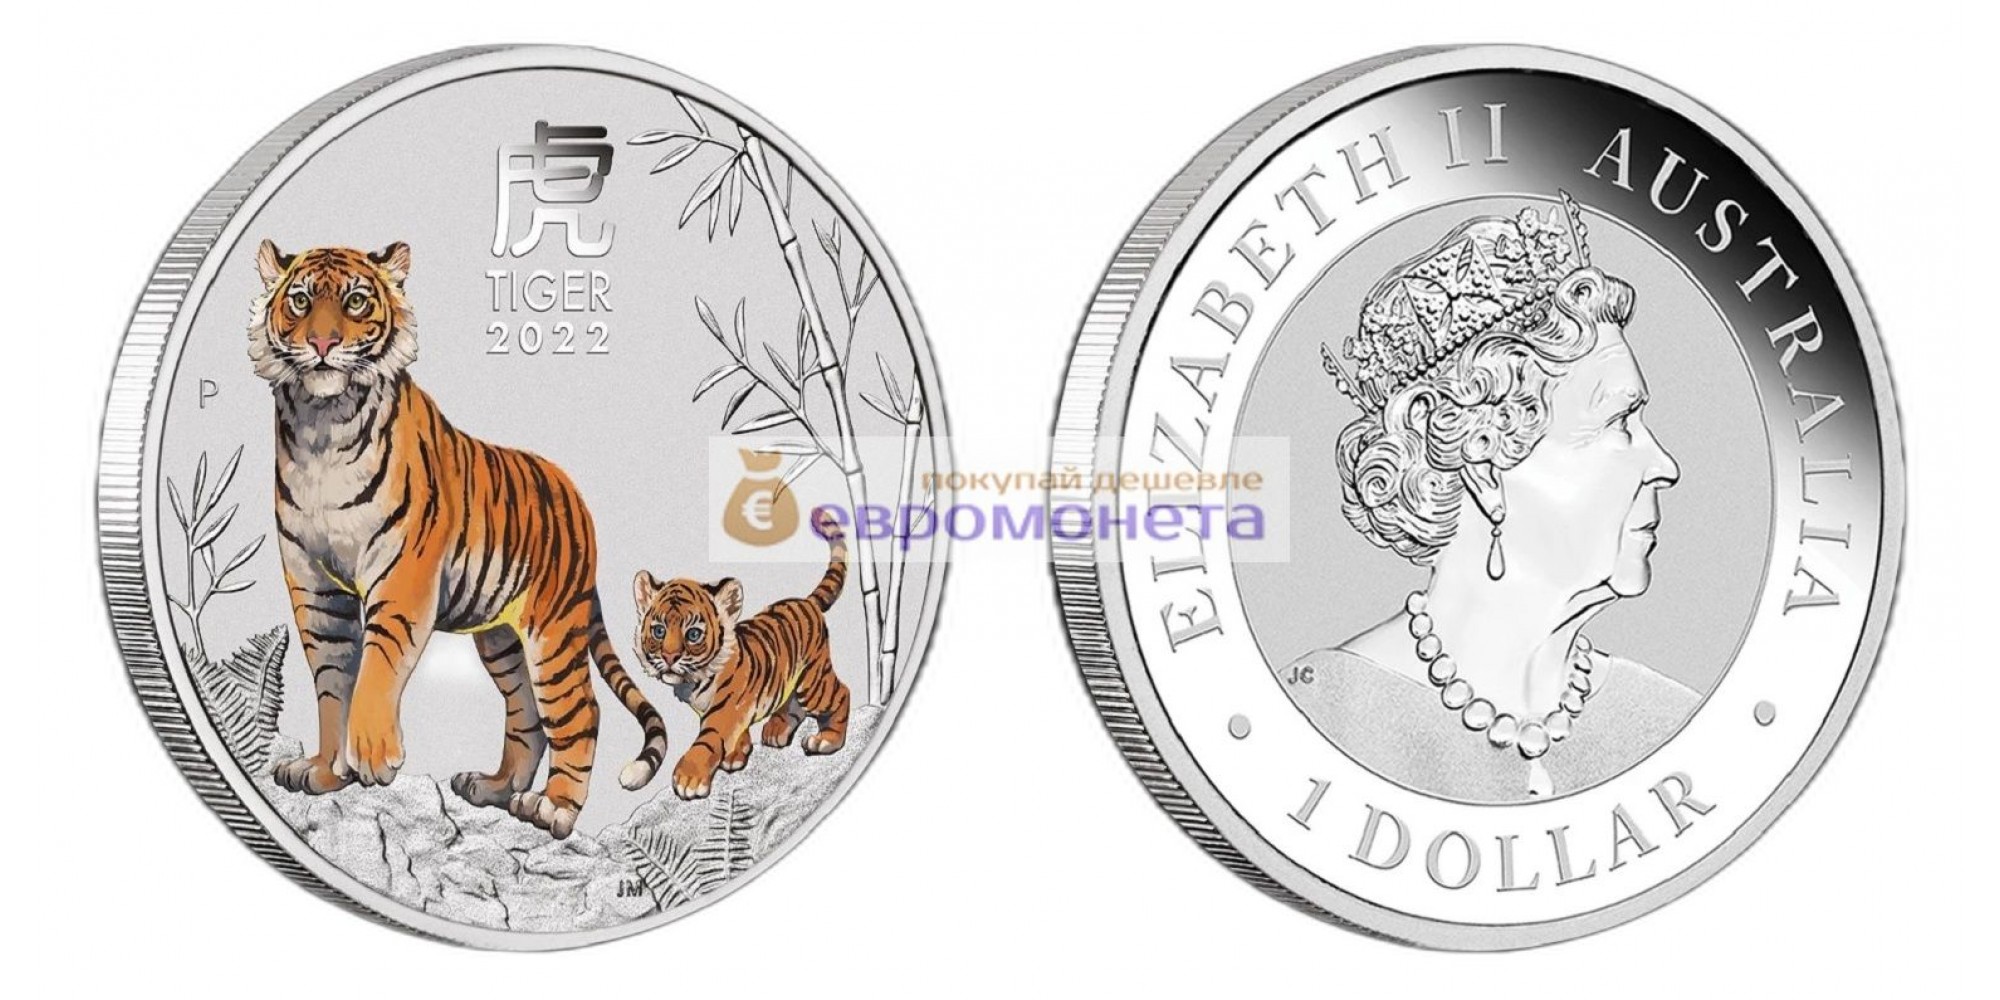 Австралия 1 доллар 2022 год тигра /Тигр с тигрёнком/ Цветное покрытие. Серебро унция 999 пробы